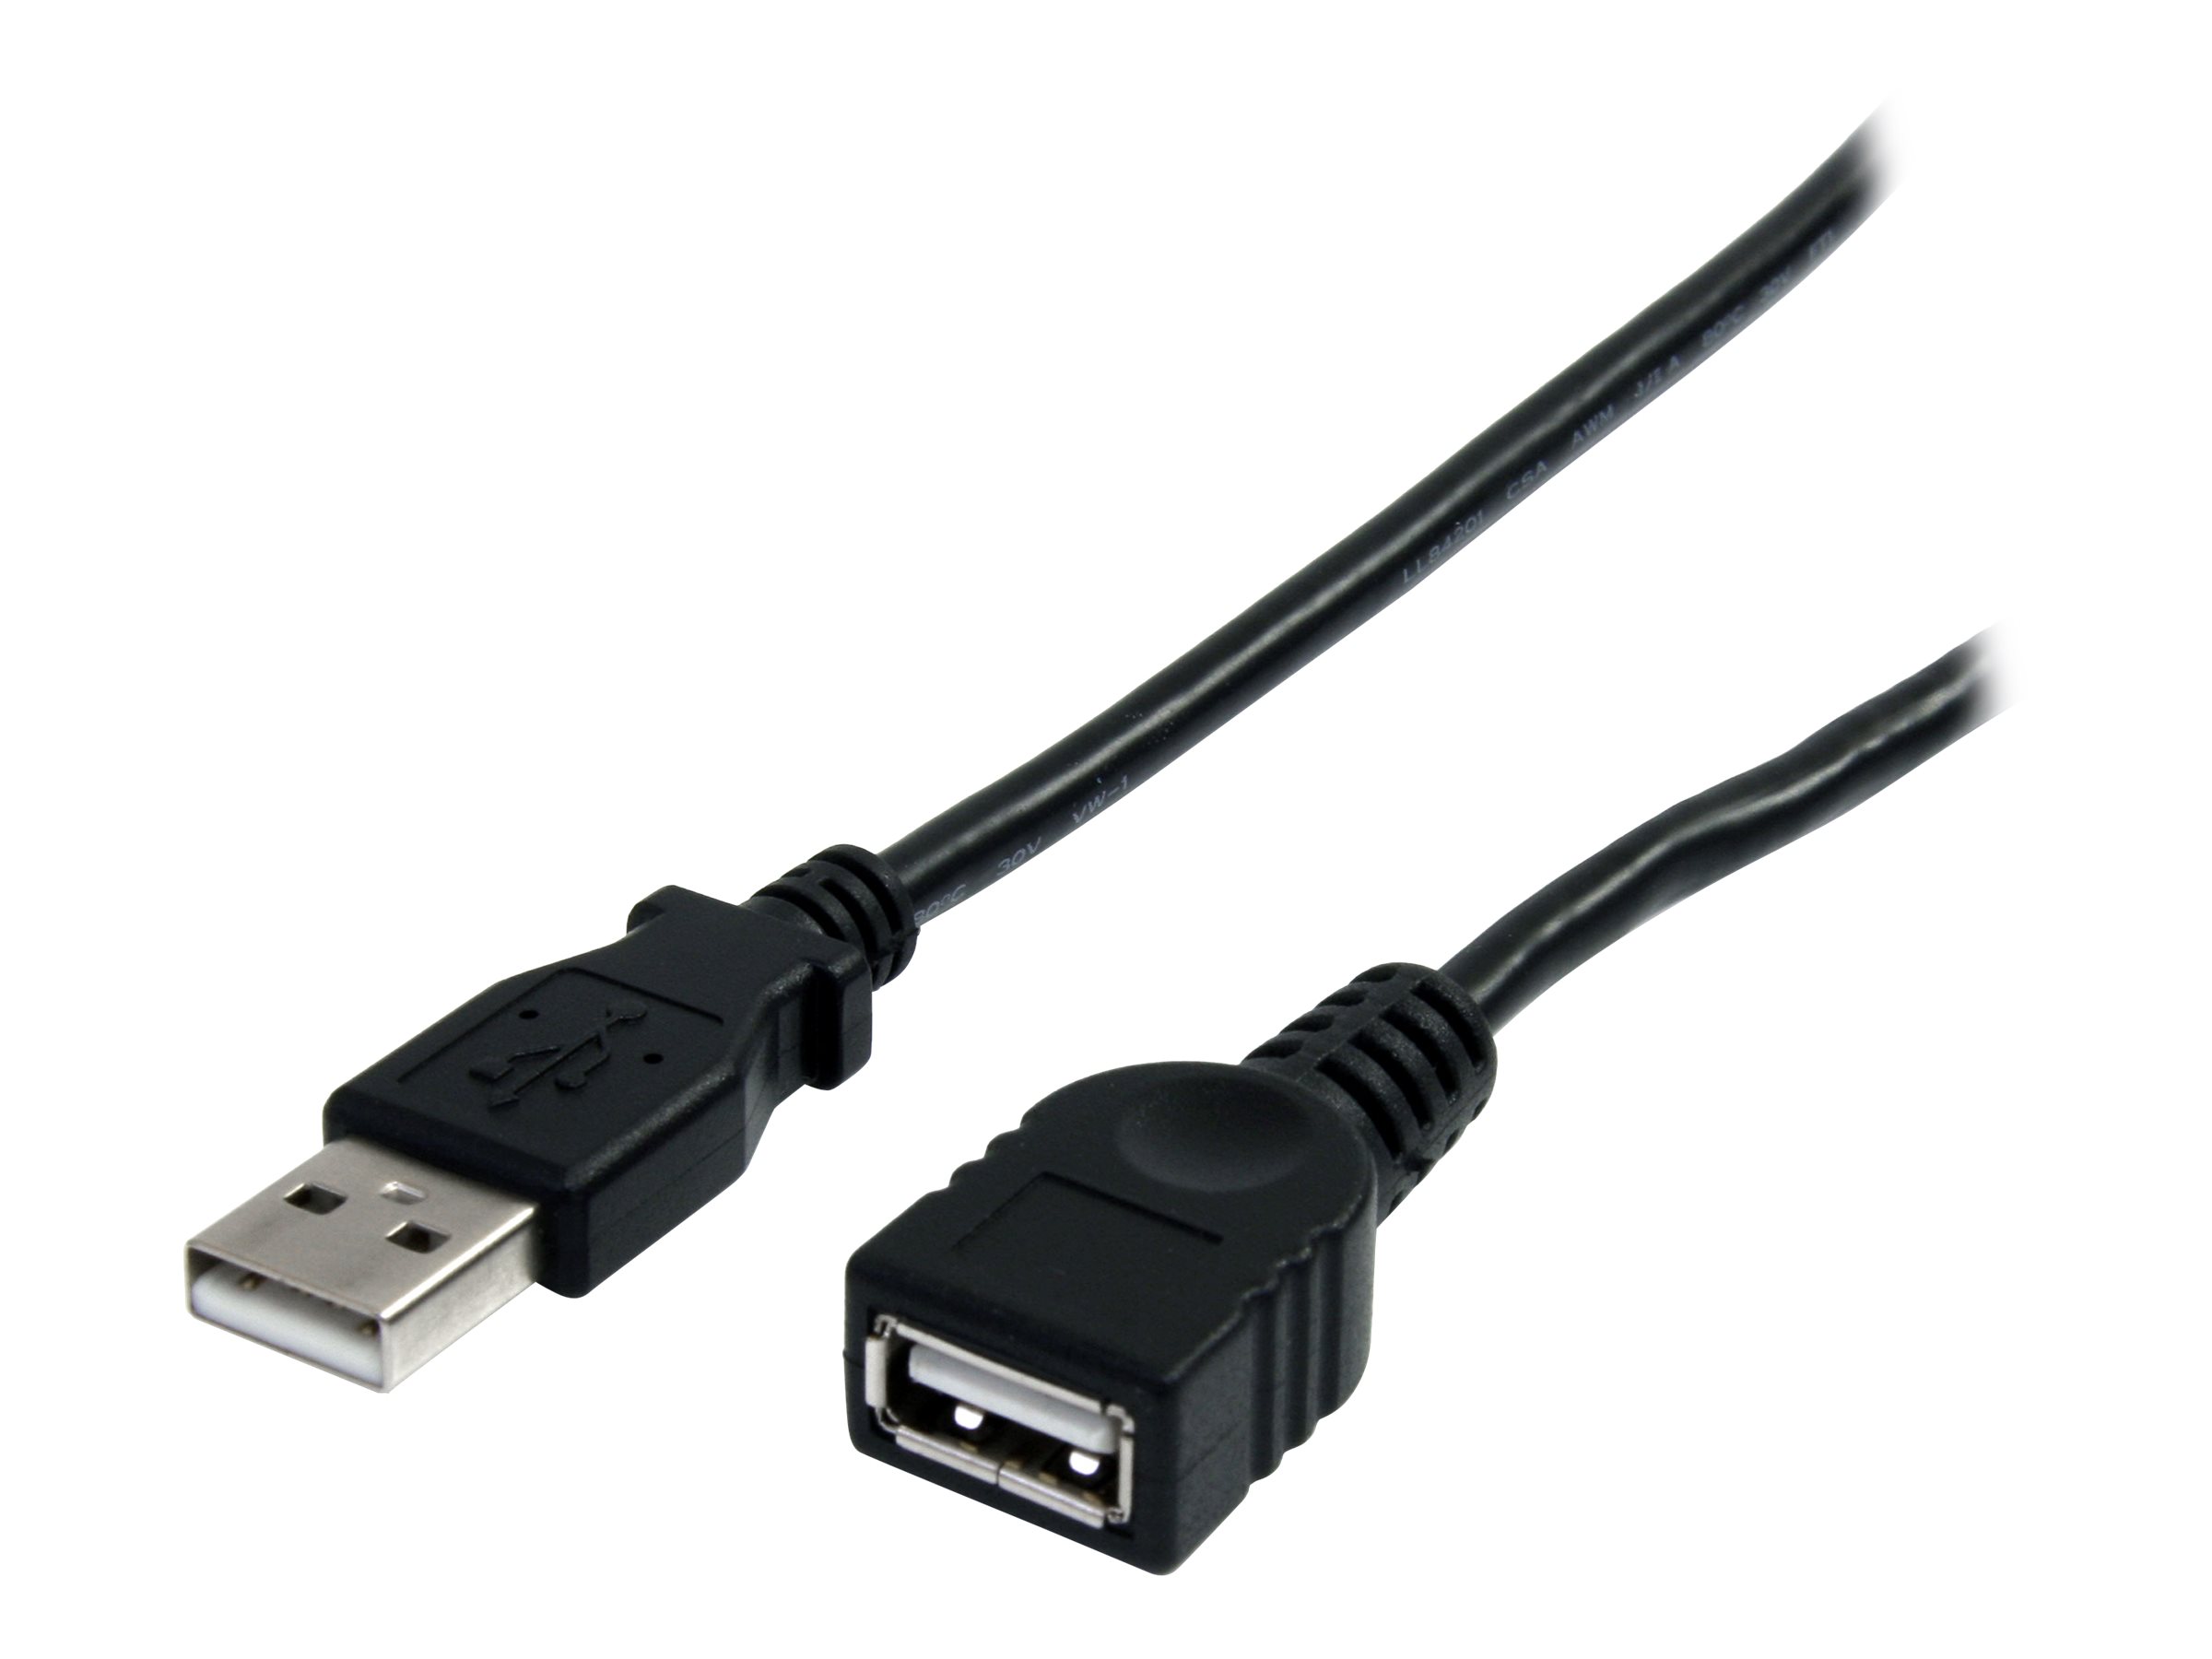 StarTech.com Câble d'extension USB Type-A de 3 m - M/F - Rallonge USB-A - Noir (USBEXTAA10BK) - Rallonge de câble USB - USB (M) pour USB (F) - USB 2.0 - 3 m - noir - pour P/N: 35FCREADBK3, ICUSB2321F, ICUSB232PRO, ICUSB232V2, LTUB1MBK, MSDREADU2OTG, UUSBOTG - USBEXTAA10BK - Câbles USB